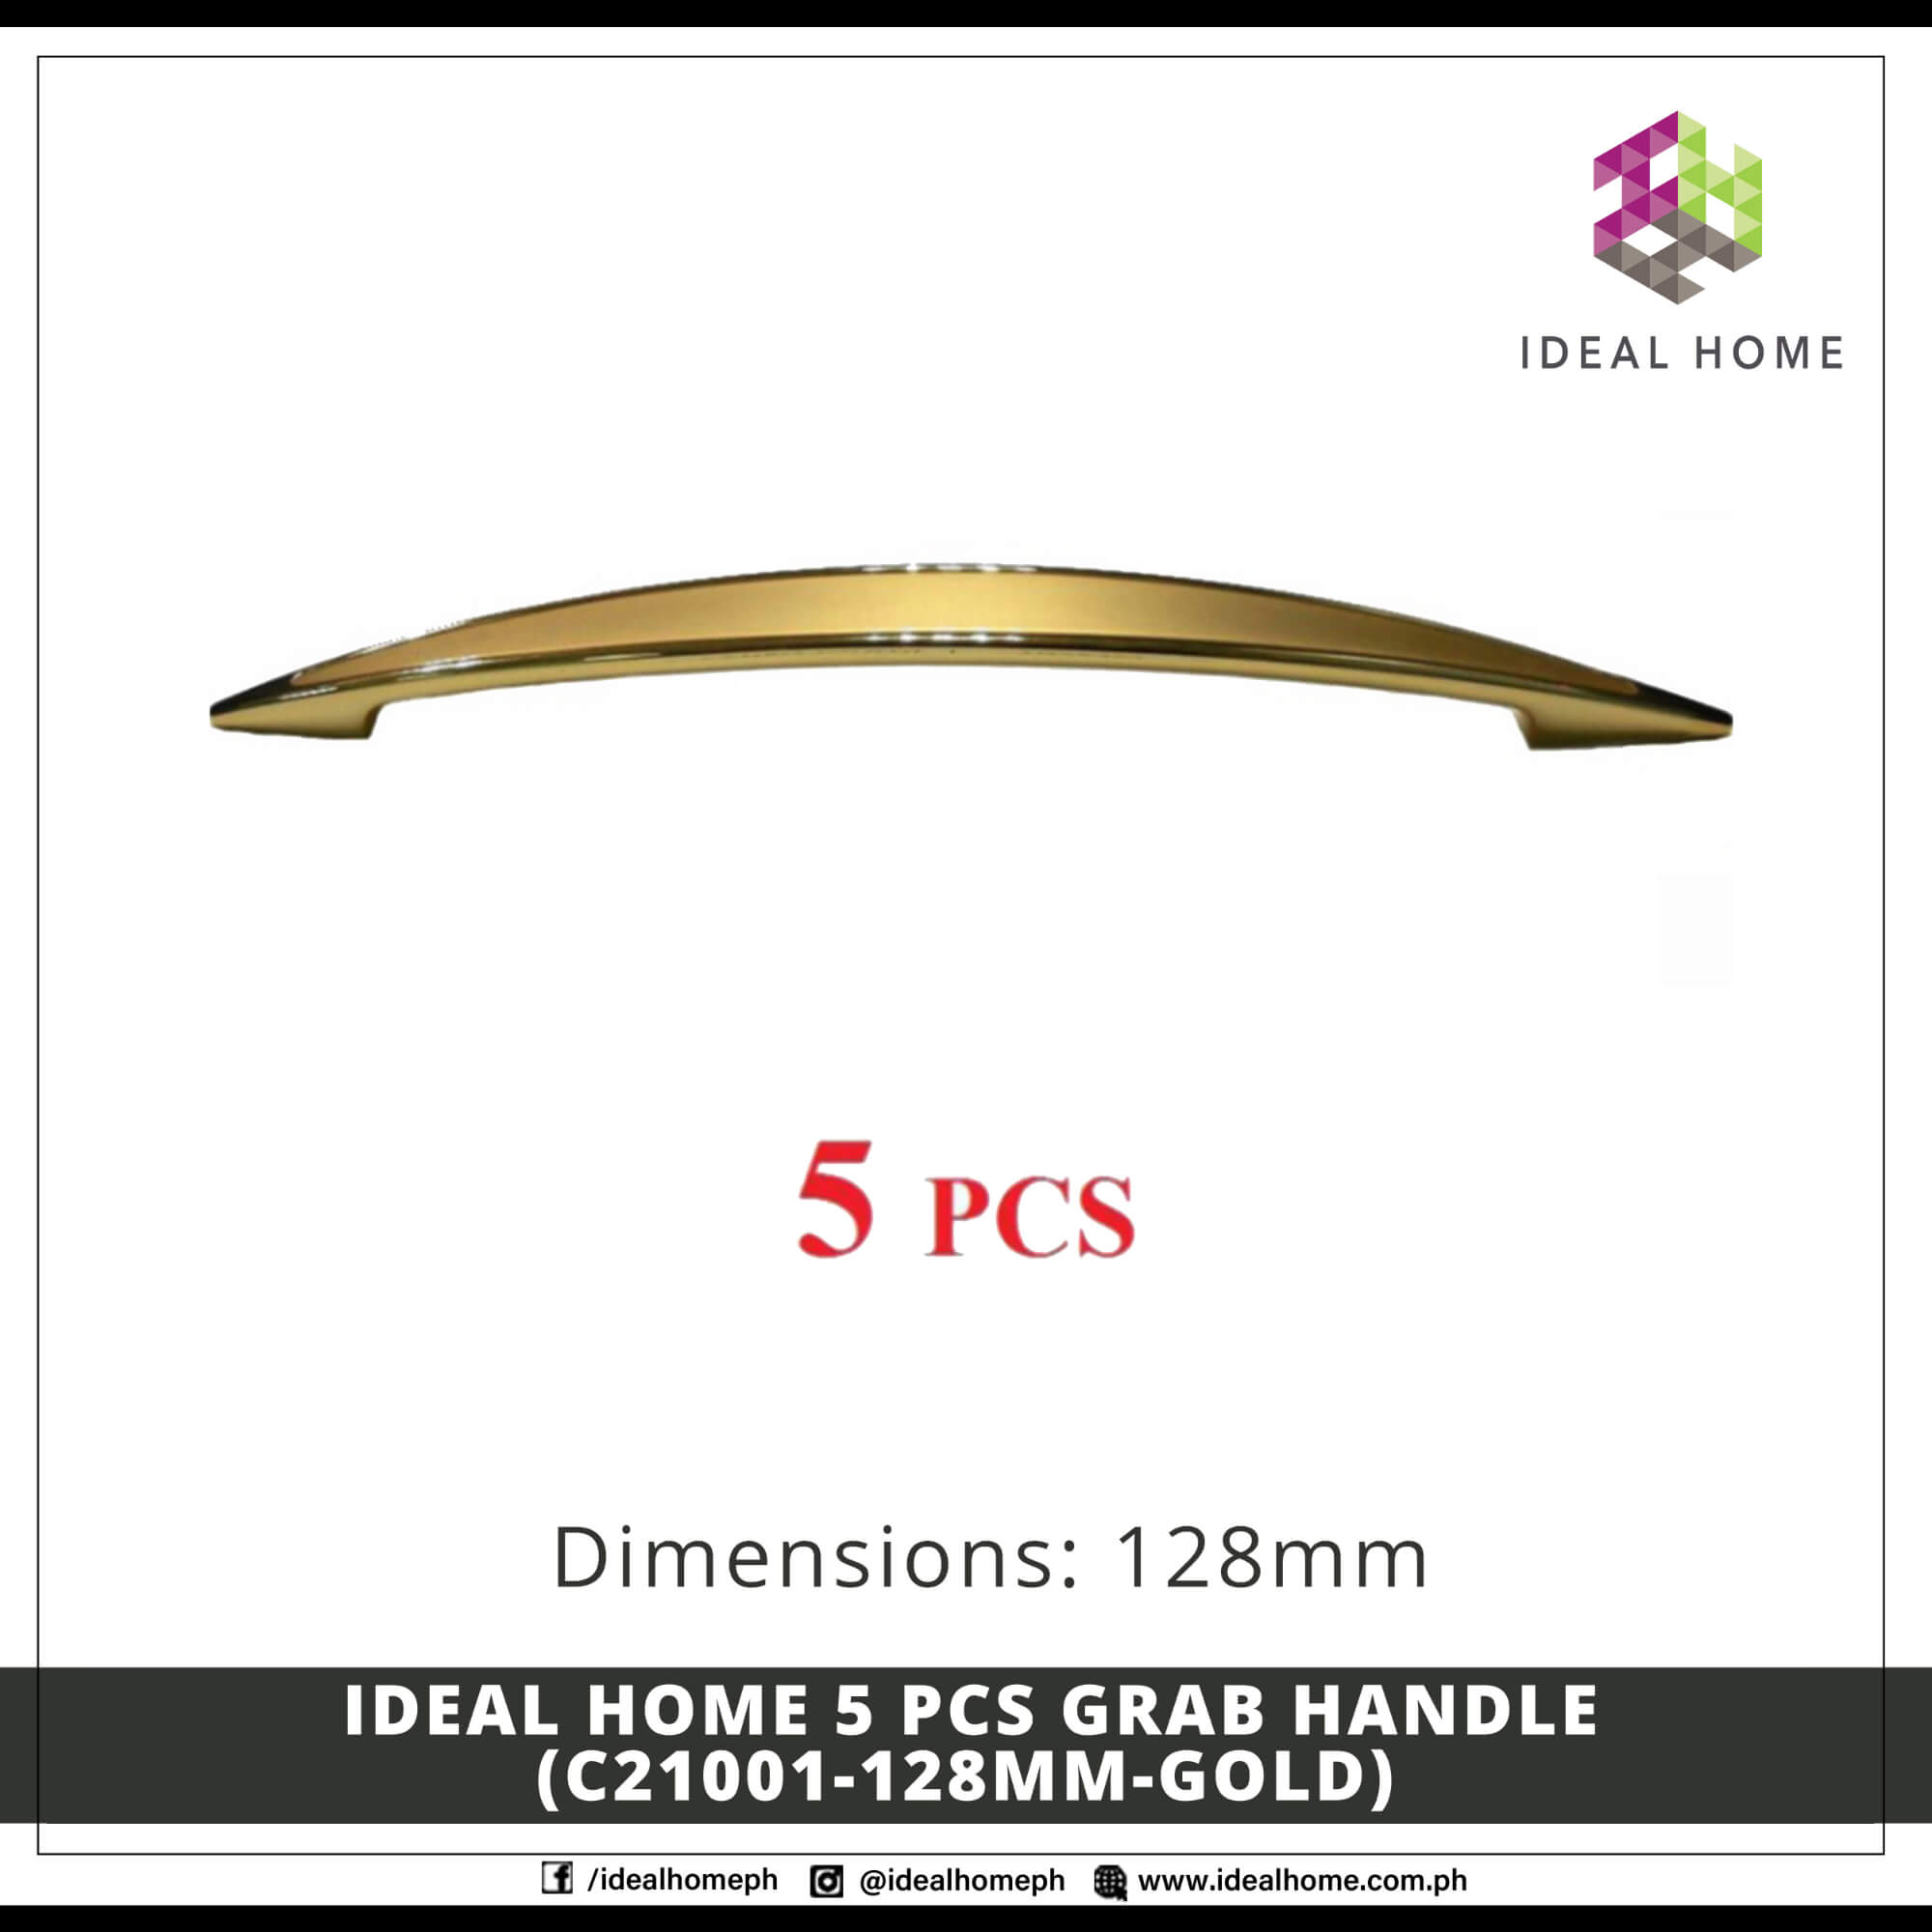 Ideal Home 5 PCS Grab Handle (C21001-128mm-GOLD)